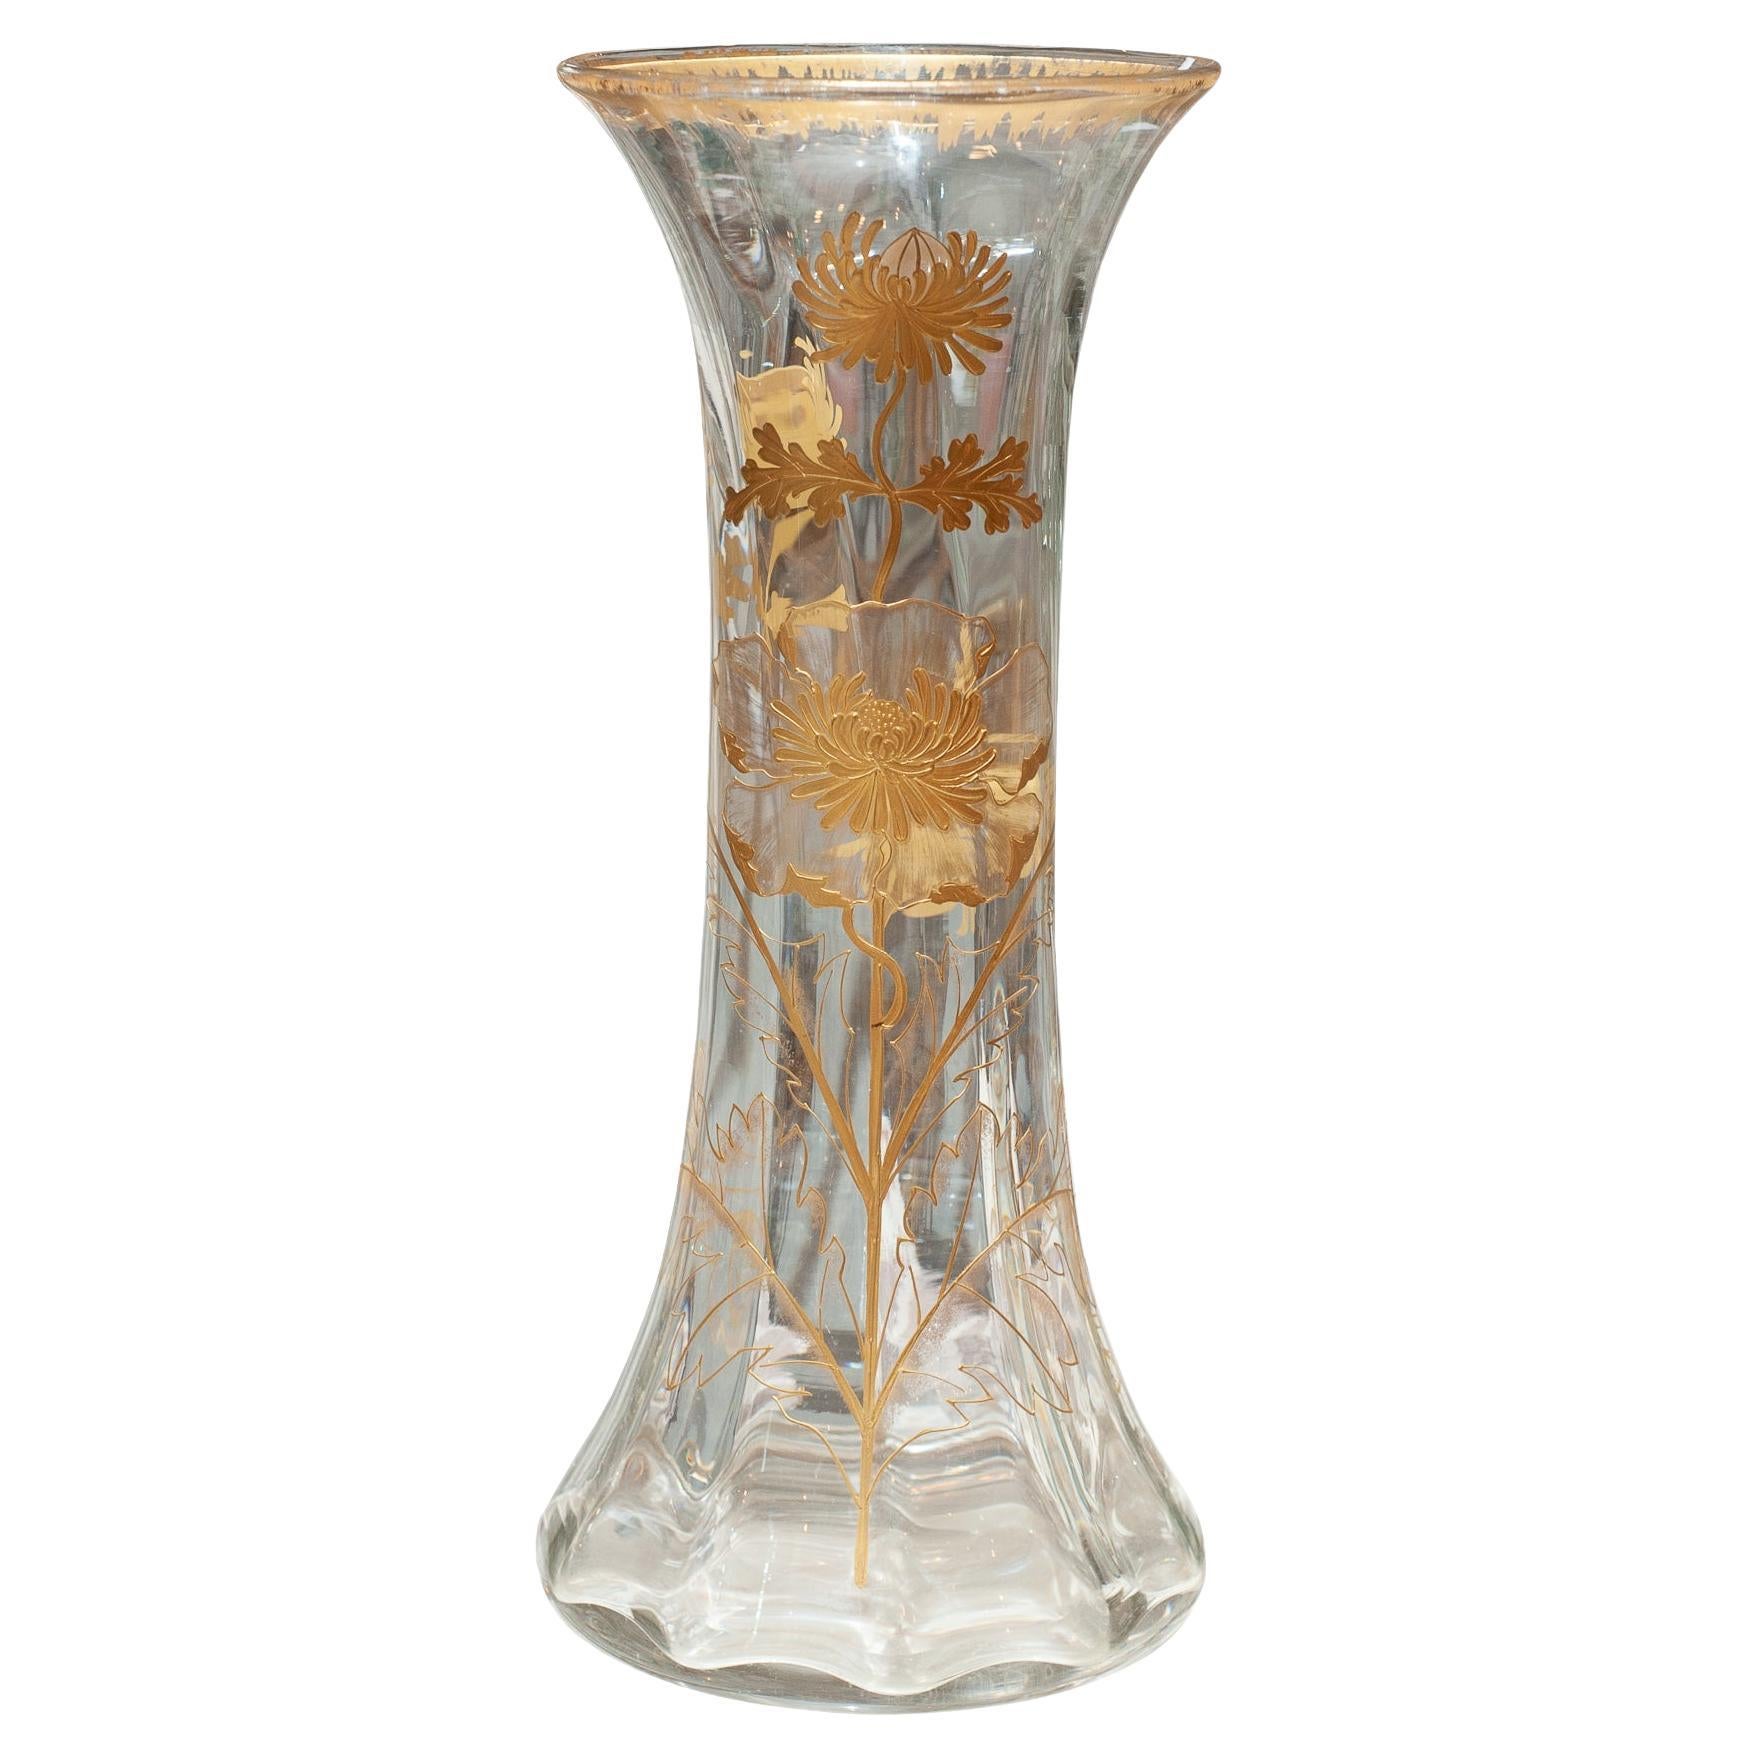 Vase français ancien à grande échelle avec dorure florale élaborée